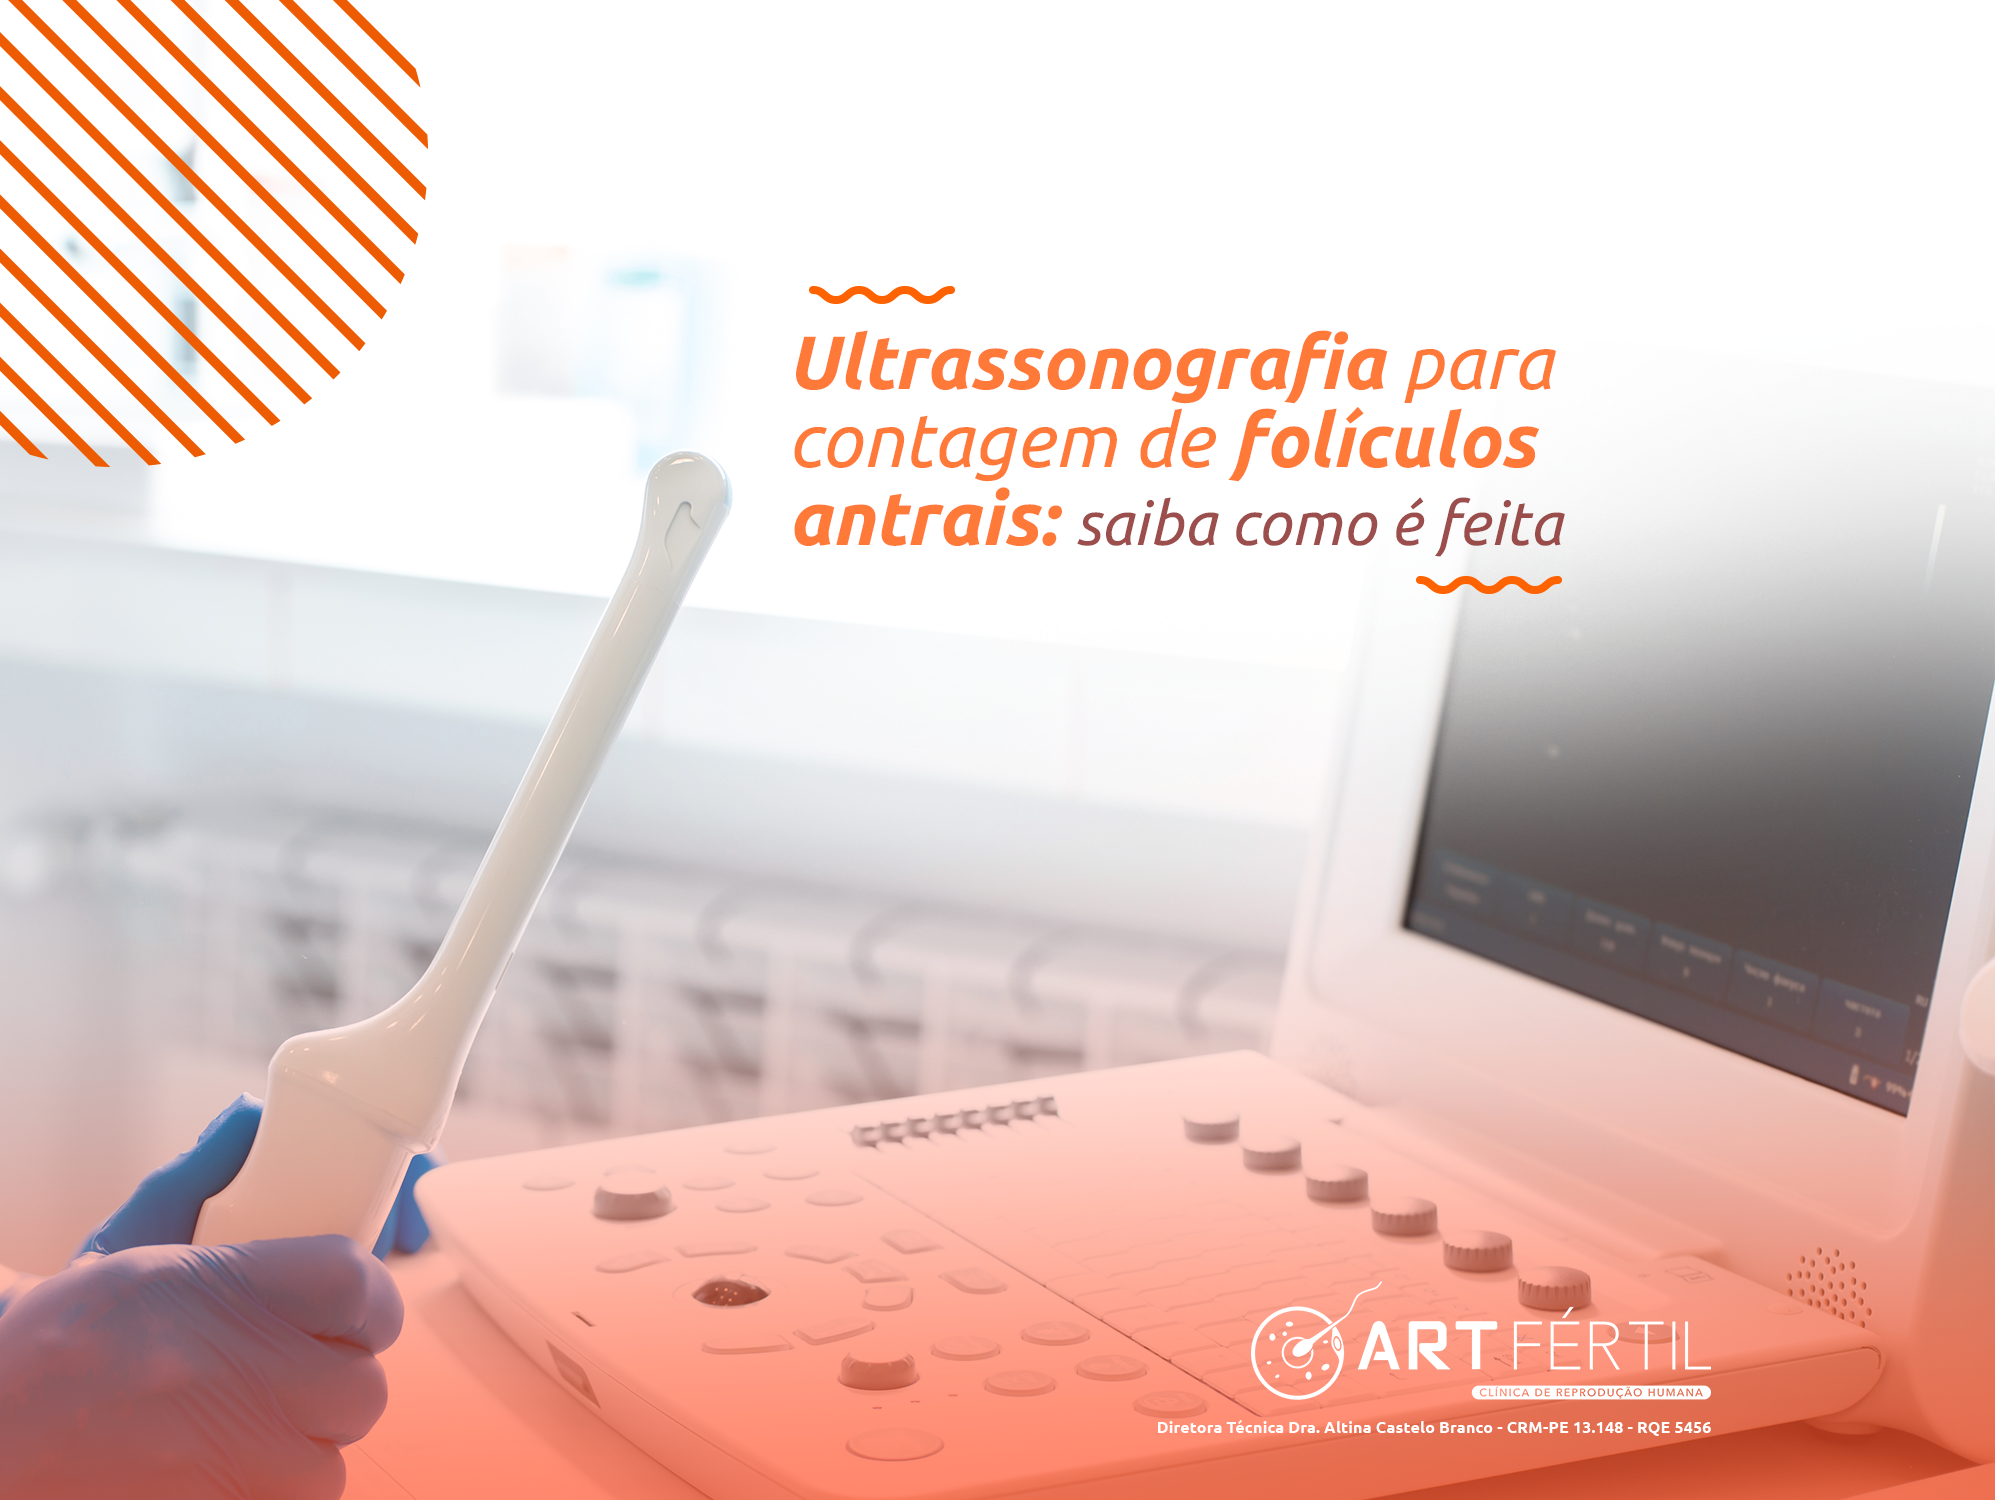 Ultrassonografia para contagem de folículos antrais: saiba como é feita